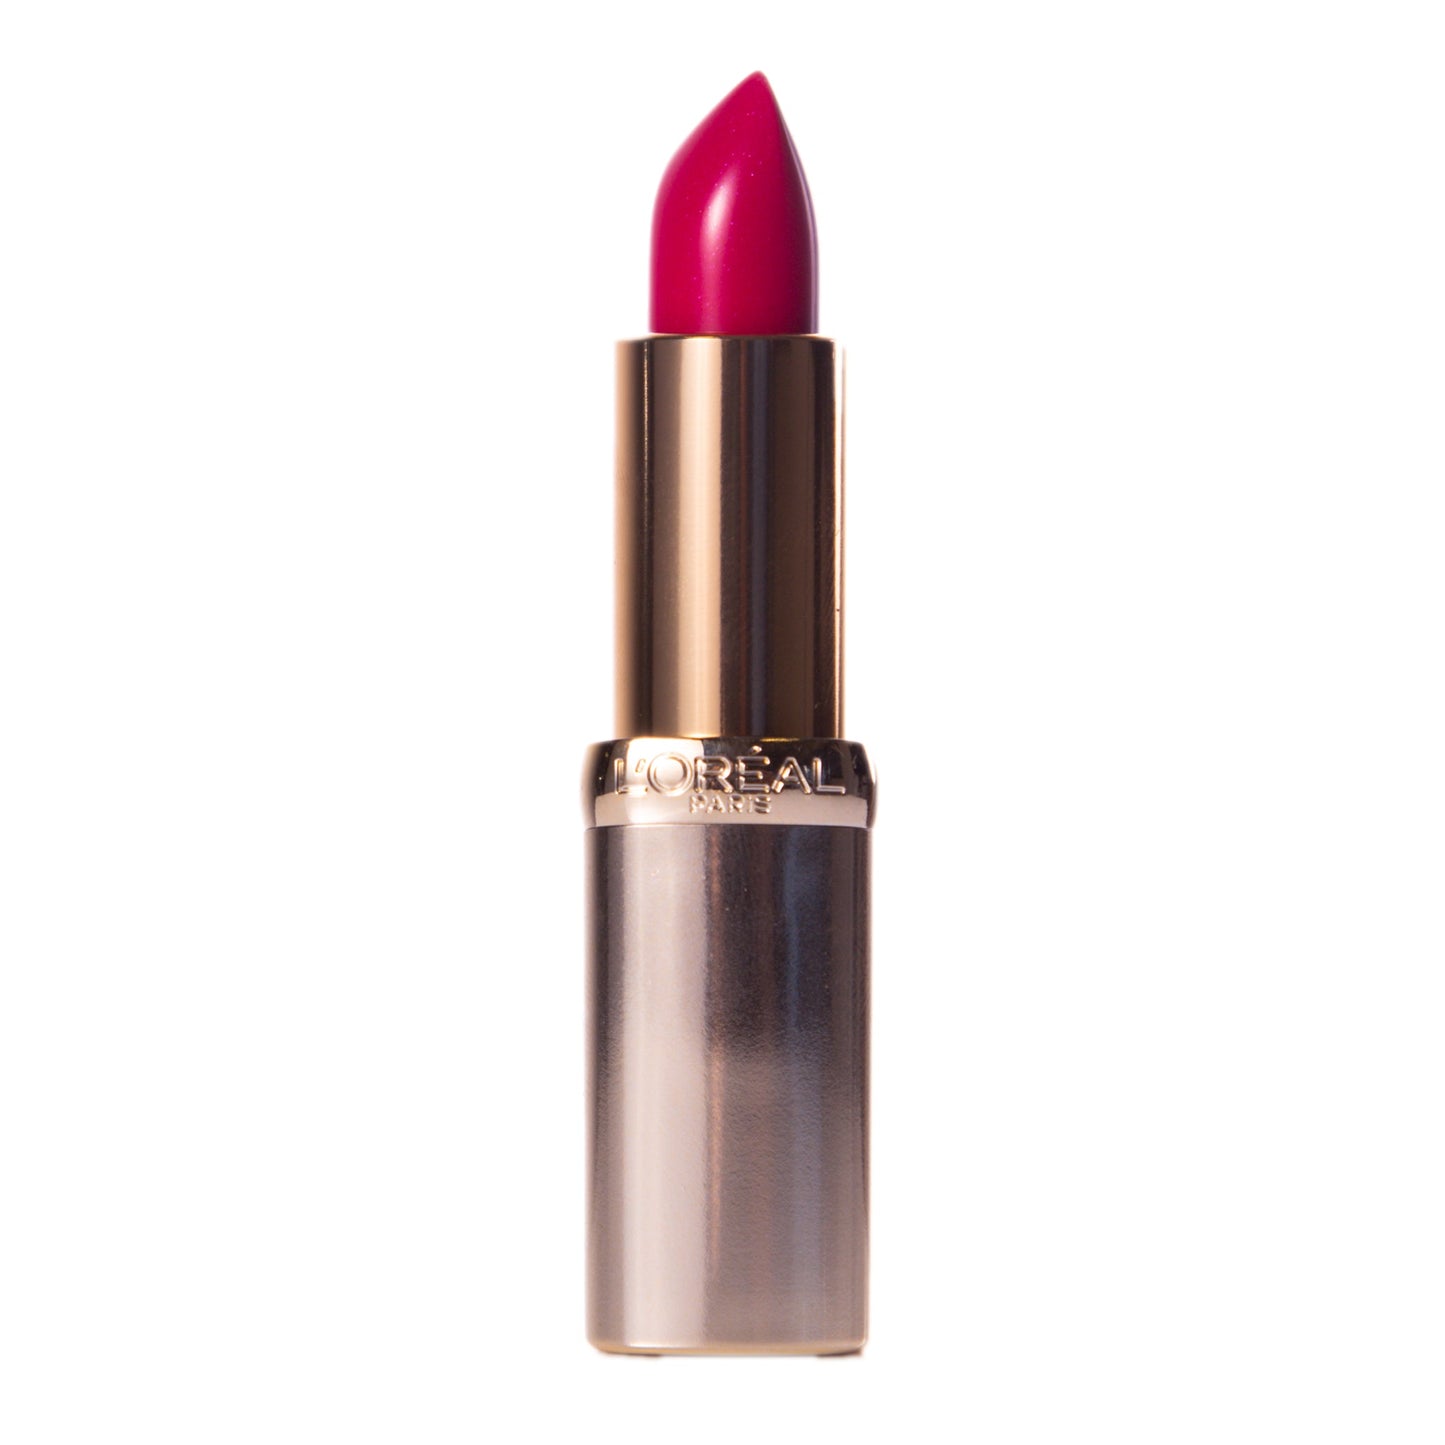 L'Oreal Color Riche Lipstick - 288 Intense Fuchsia